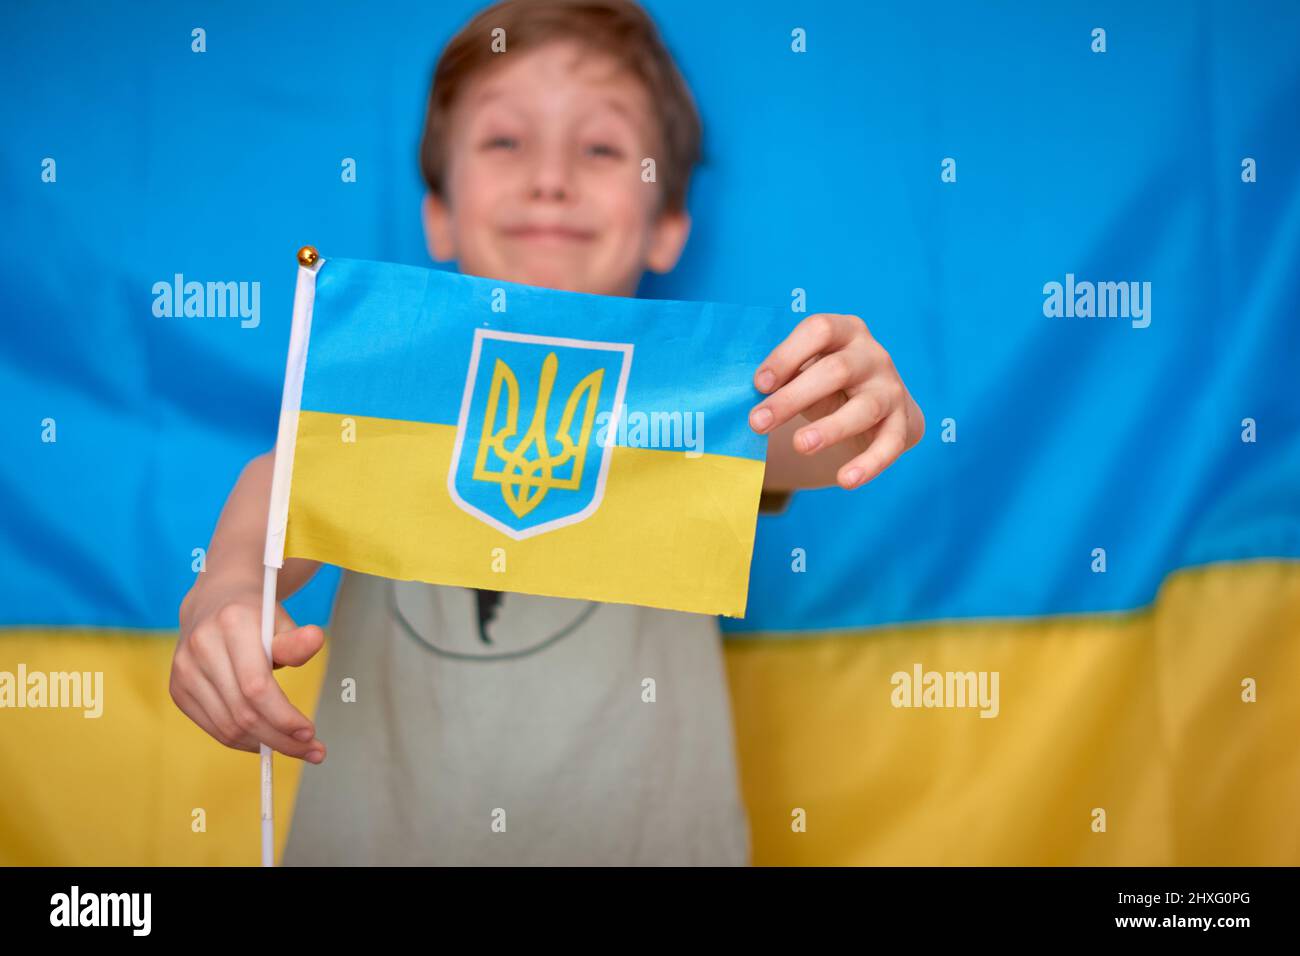 Garçon tenant entre les mains drapeau ukrainien sur fond jaune-bleu. Les enfants soutiennent l'Ukraine en montrant du cœur. Crise ukrainienne, agression russe en Ukraine. Guerre de la Russie contre l'Ukraine. Banque D'Images